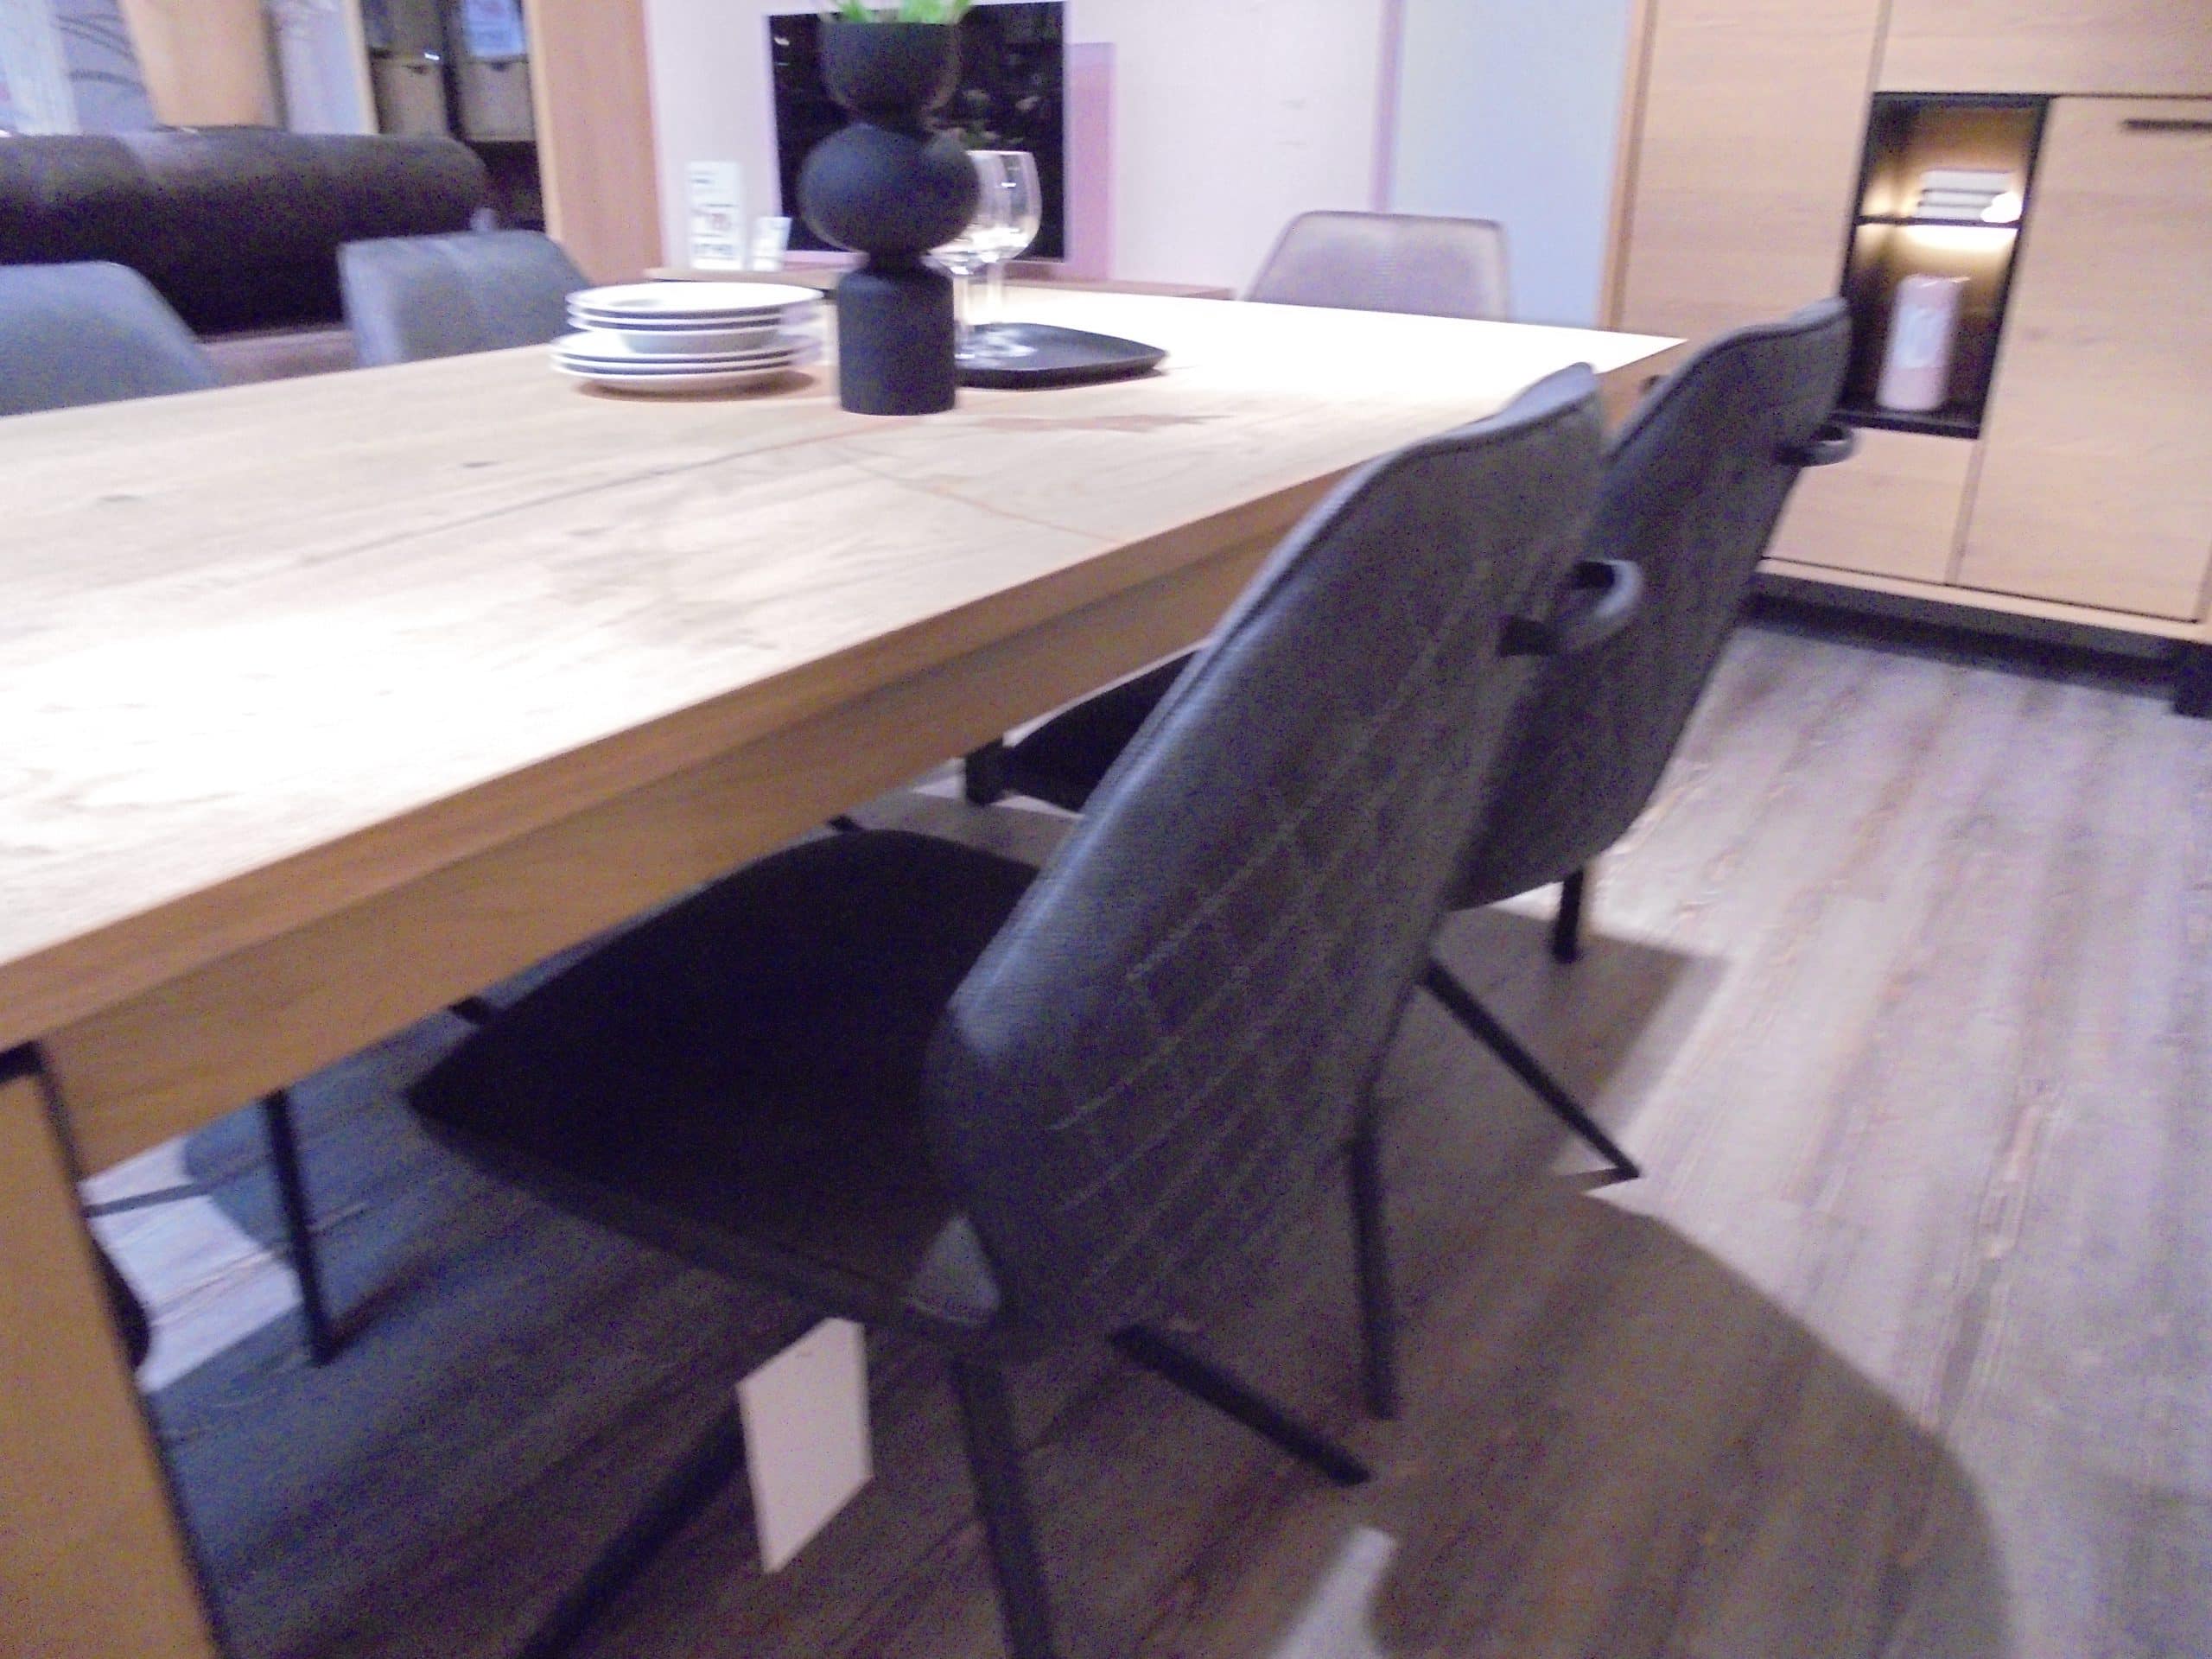 Tischgruppe Arnsberg/Bravolo mit Esstisch 100 x 190/250 cm in Eiche furniert und 6 Stühlen bei Möbelhaus Thiex im Abverkauf über 30 % reduziert.